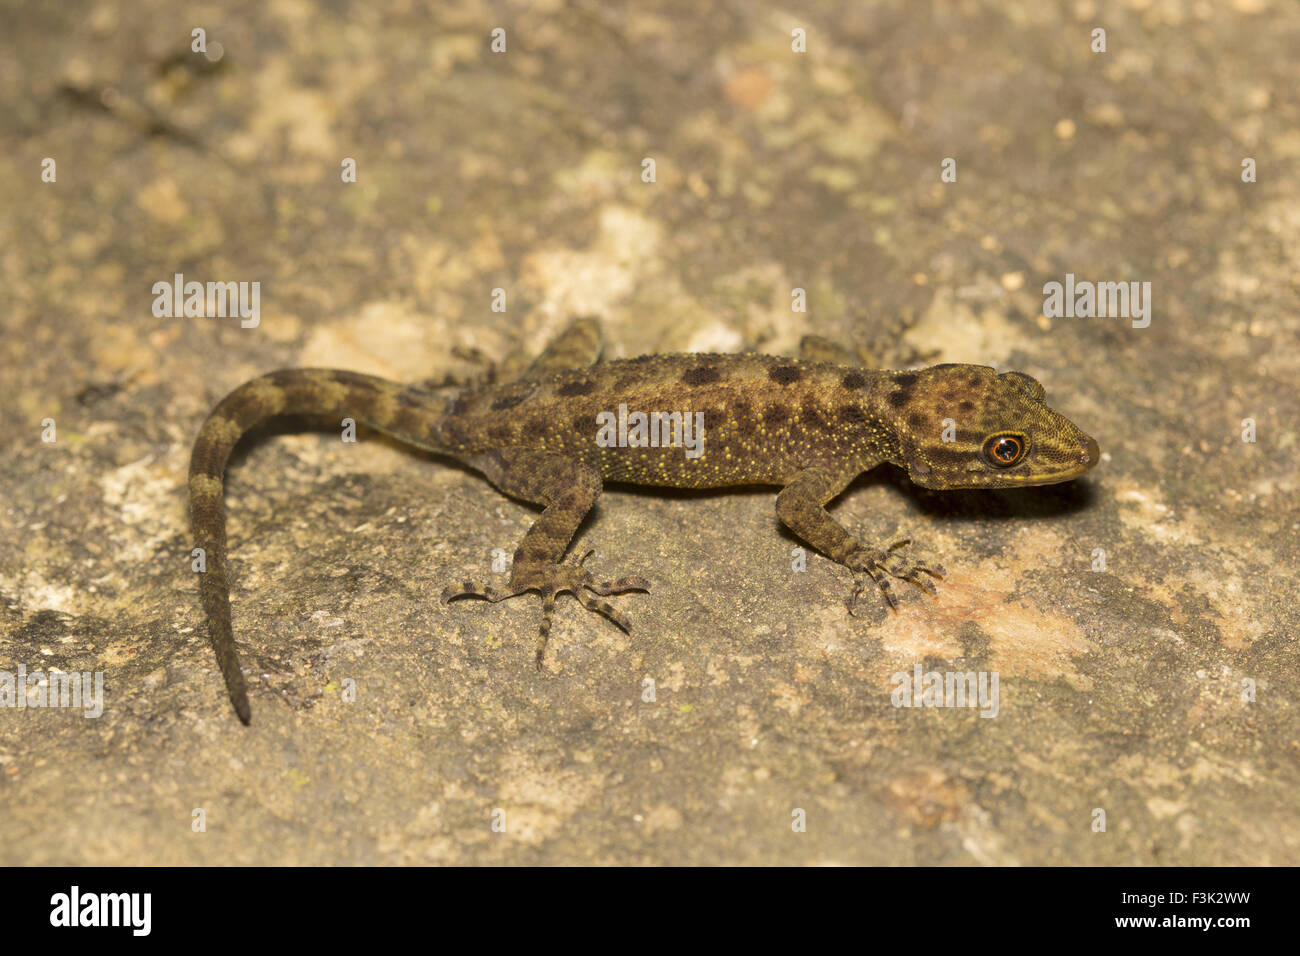 Geco enano, Cnemaspis sp, Gekkonidae, Agumbe ARRSC, Karnataka, India Foto de stock